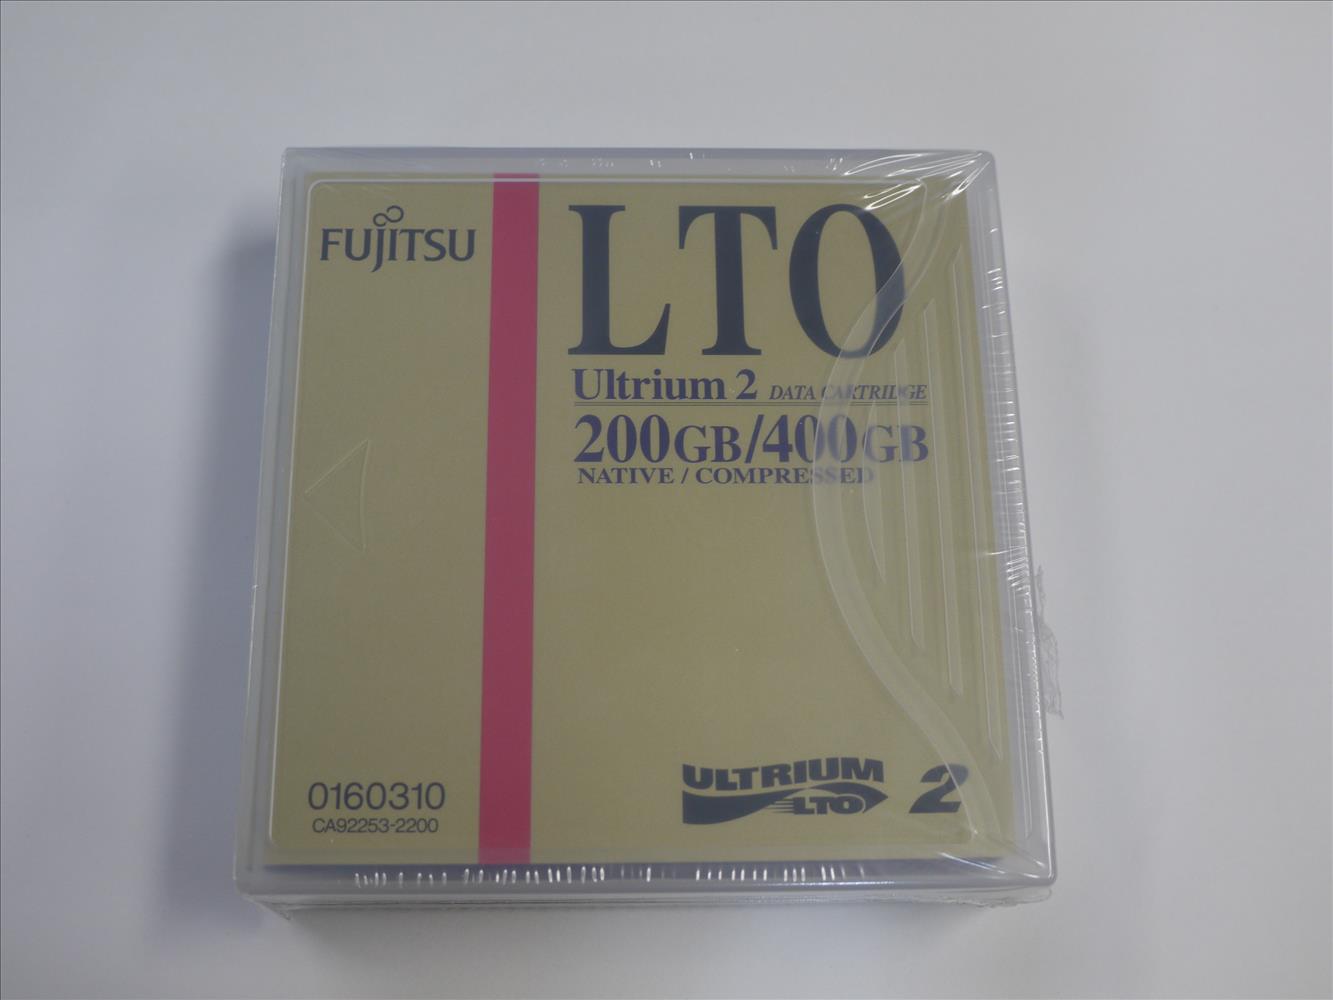 FUJITSU 贈呈 LTO Ultrium2 200GB 400GB 品質検査済 データカートリッジ 新品